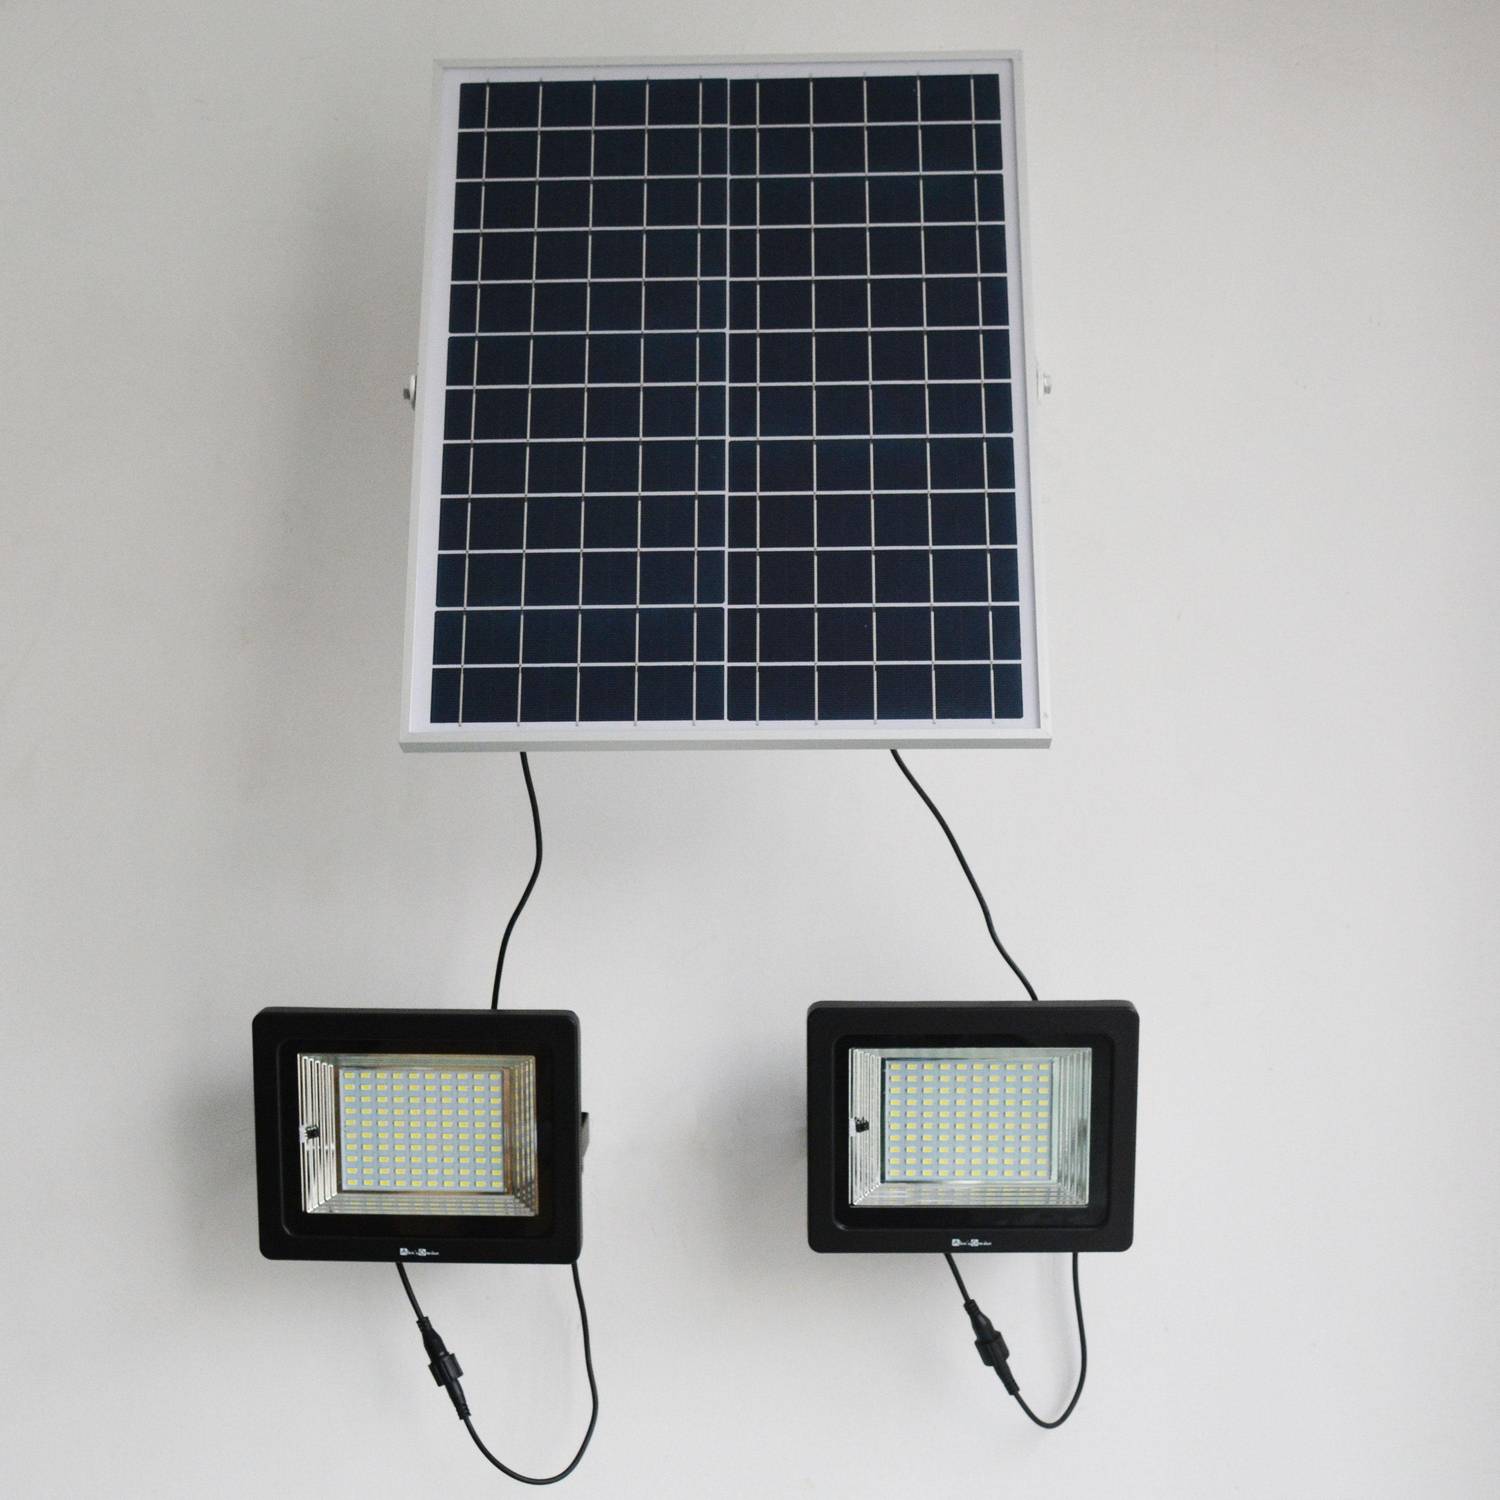 Lot de 2 projecteurs solaires LED 50W avec panneau solaire télécommandé blanc froid, lampes résistantes à la pluie et autonome, spot extra puissant 1800 lumens équivalent 135W Photo5